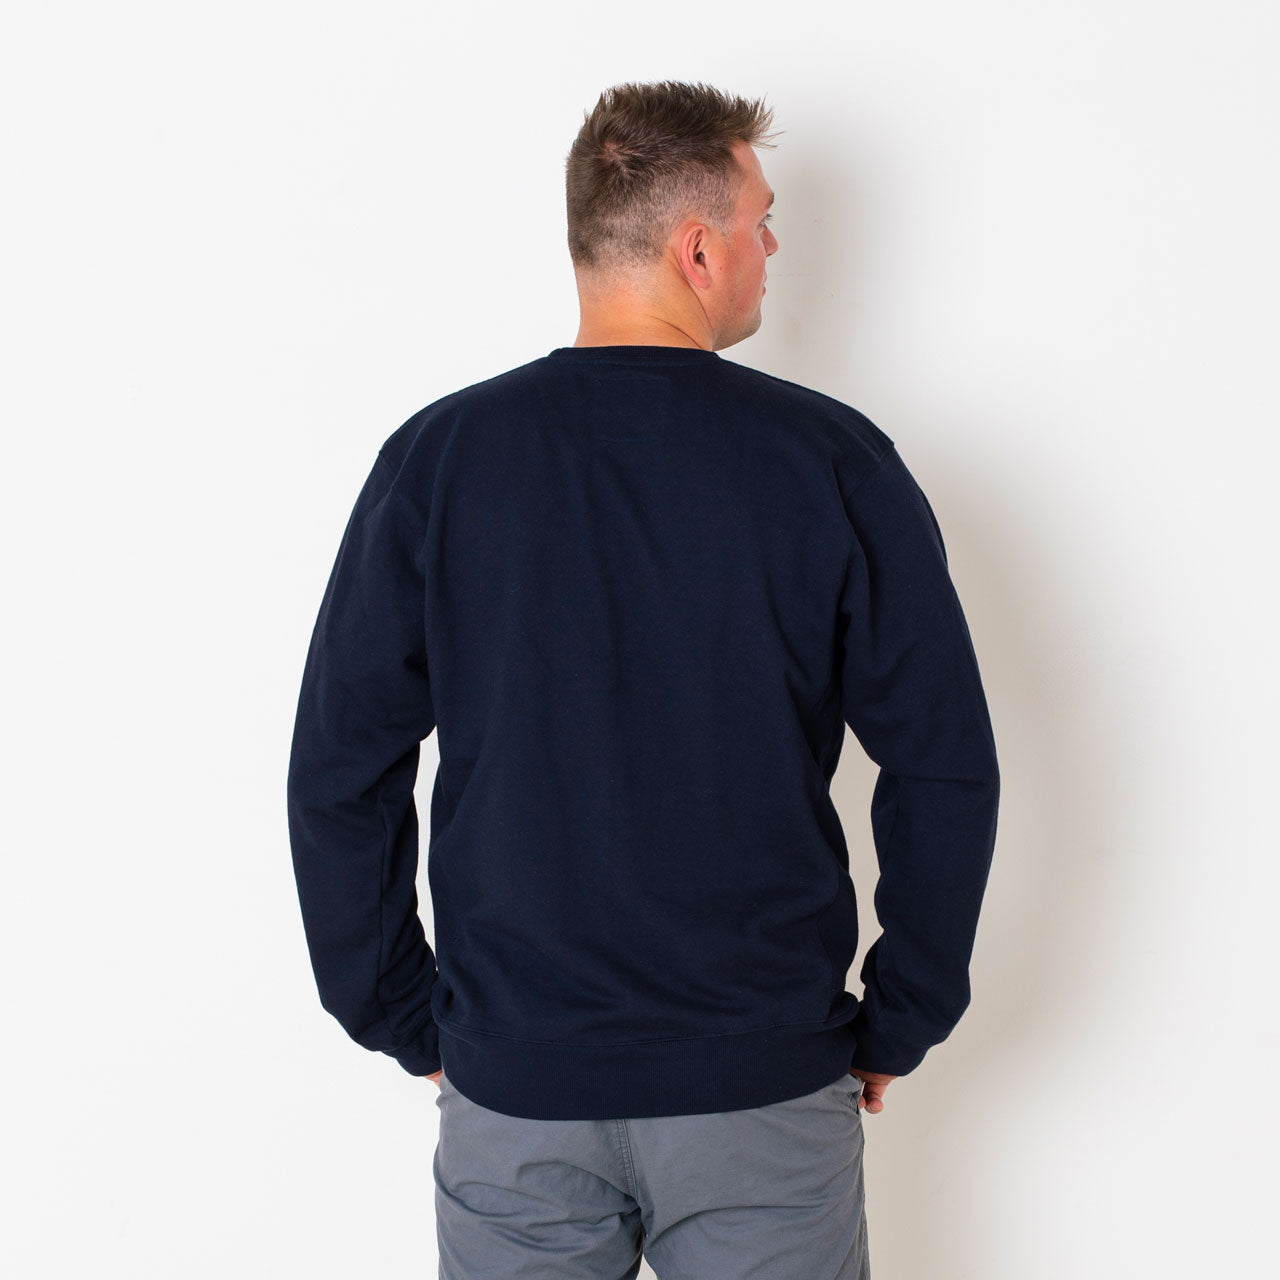 J.Crew: Short-sleeve Crewneck Sweatshirt In Original Cotton Terry For Women